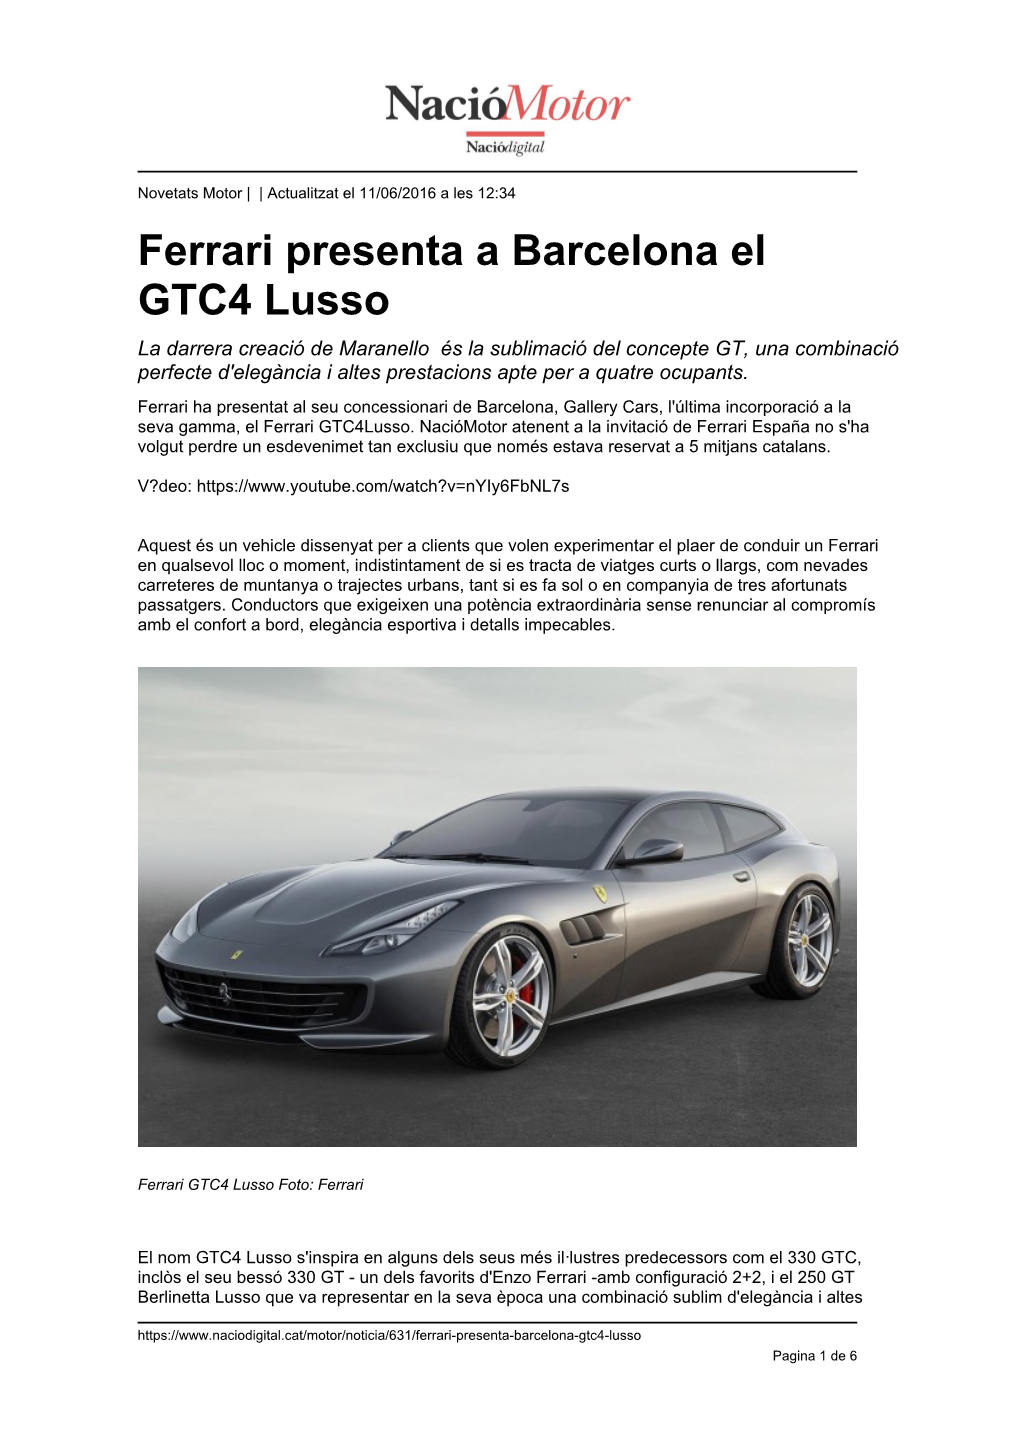 Ferrari Presenta a Barcelona El GTC4 Lusso